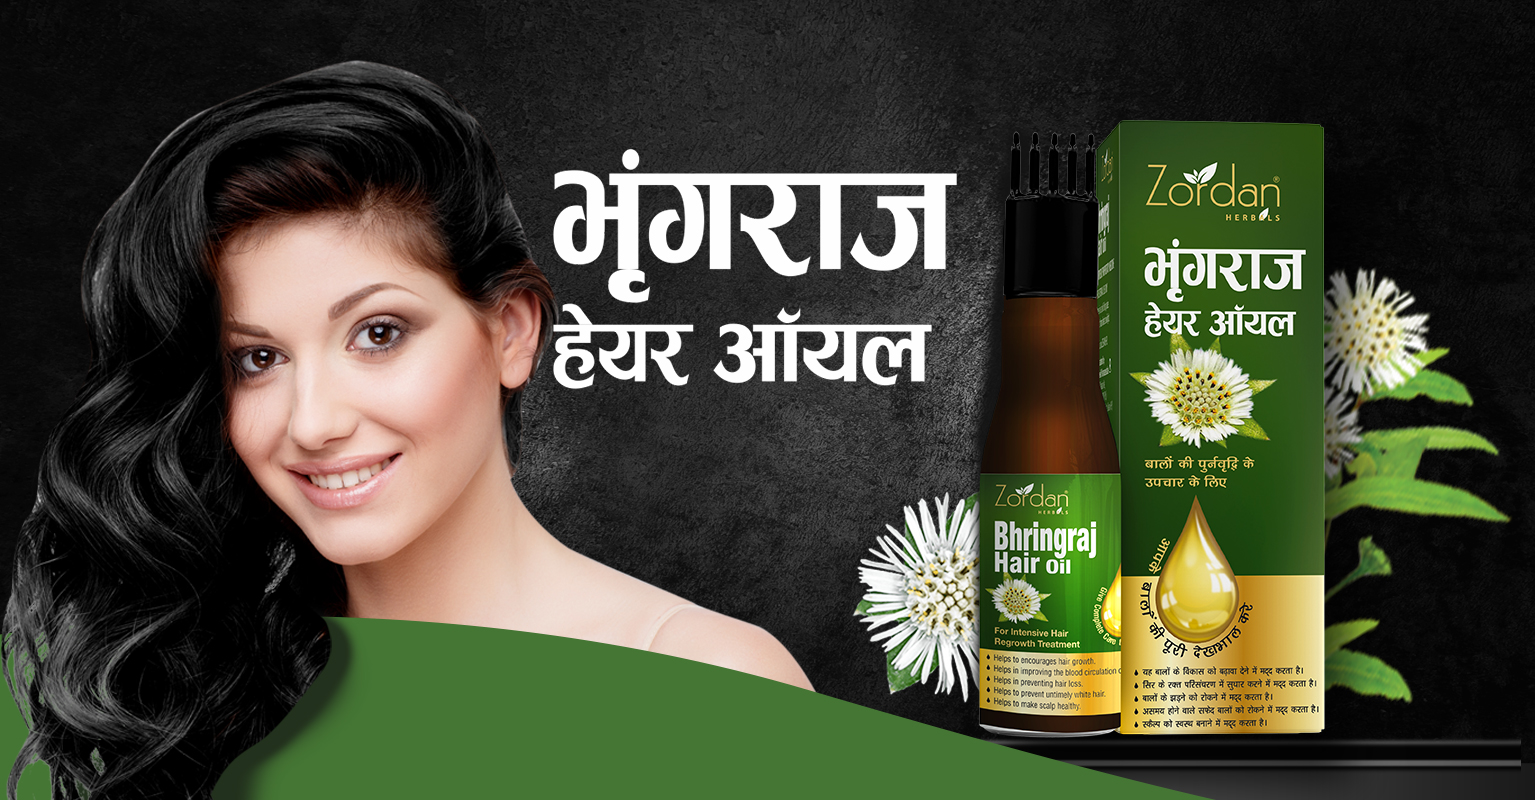 Buy Ayurvedic Bhringraj Hair Oil Online at Best Price – Biotique